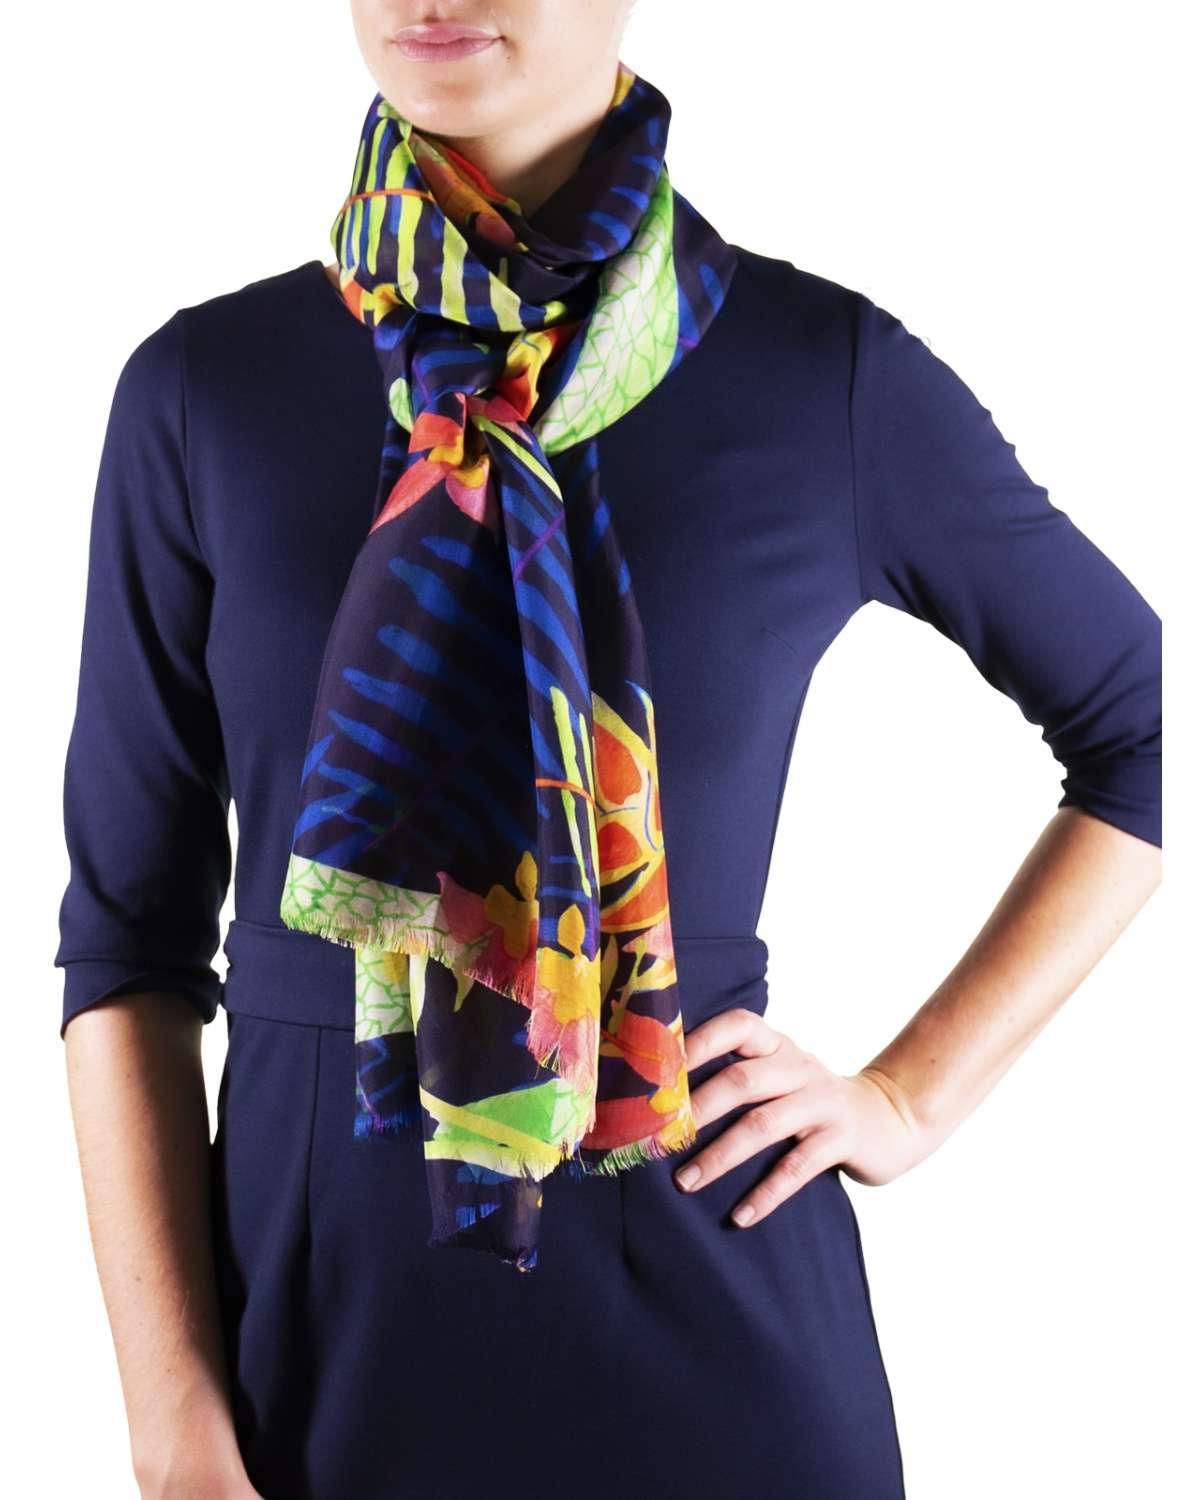 Bandeau foulard ceinture 3 en 1 aux motifs modernes et colorés.